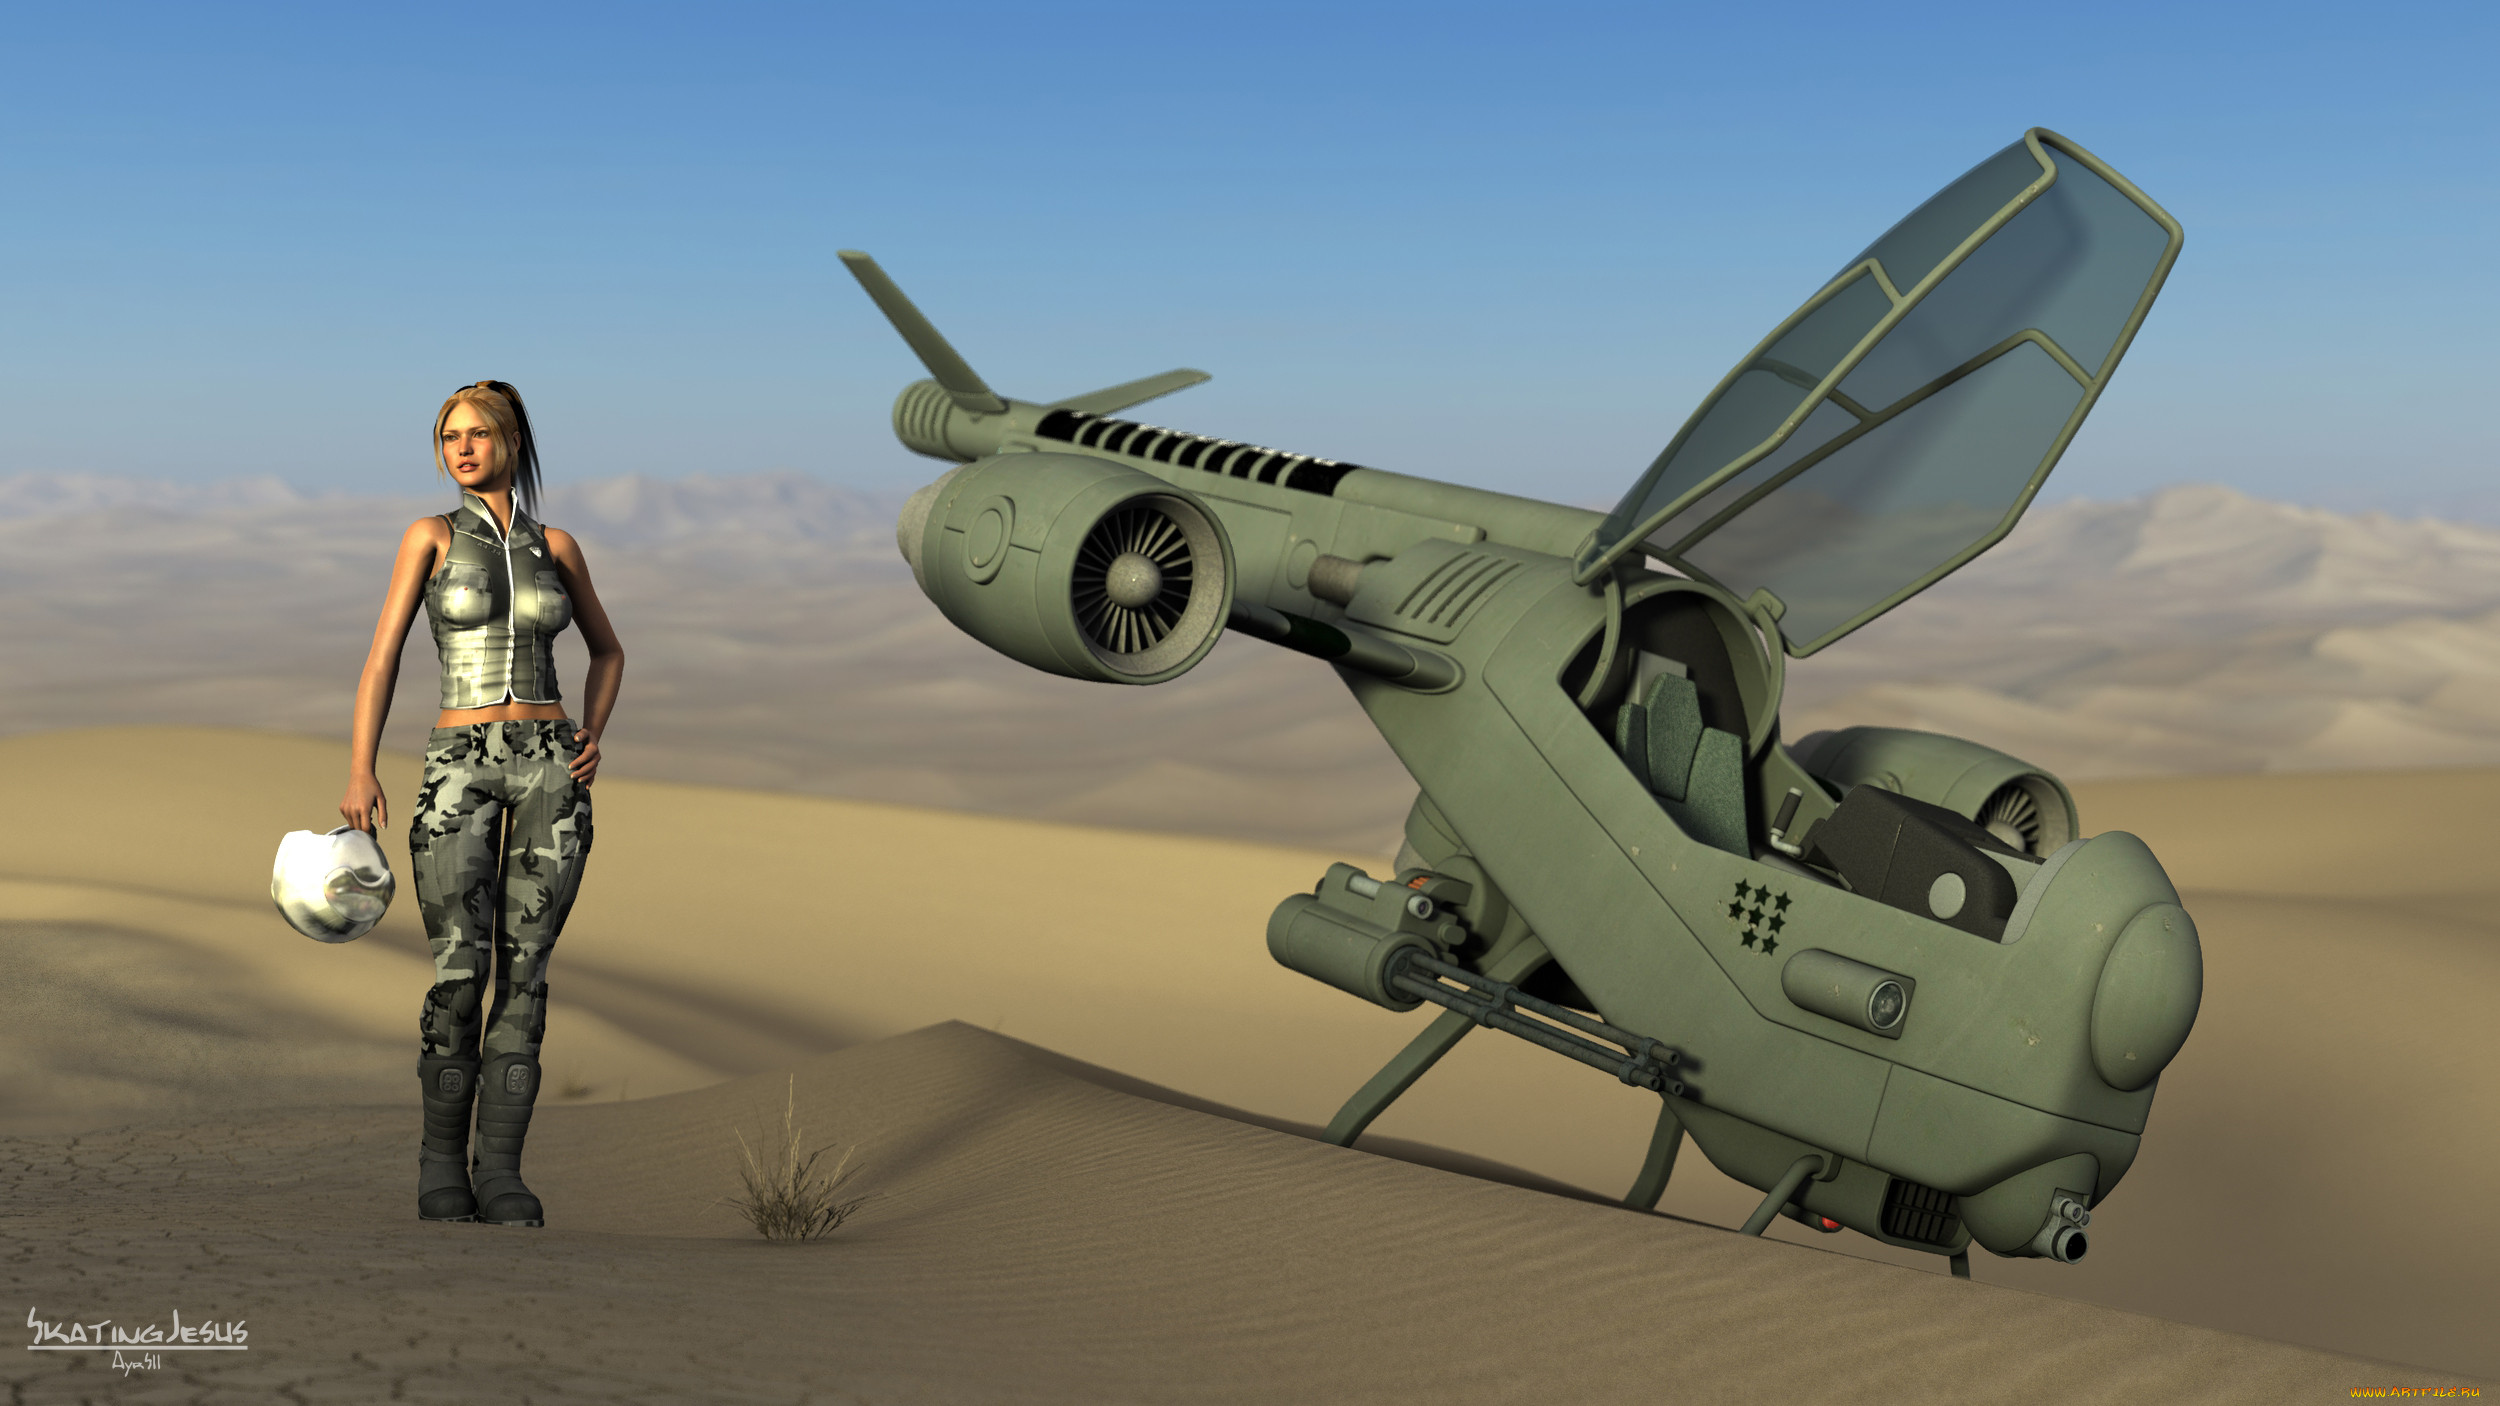 Самолет В Пустыне